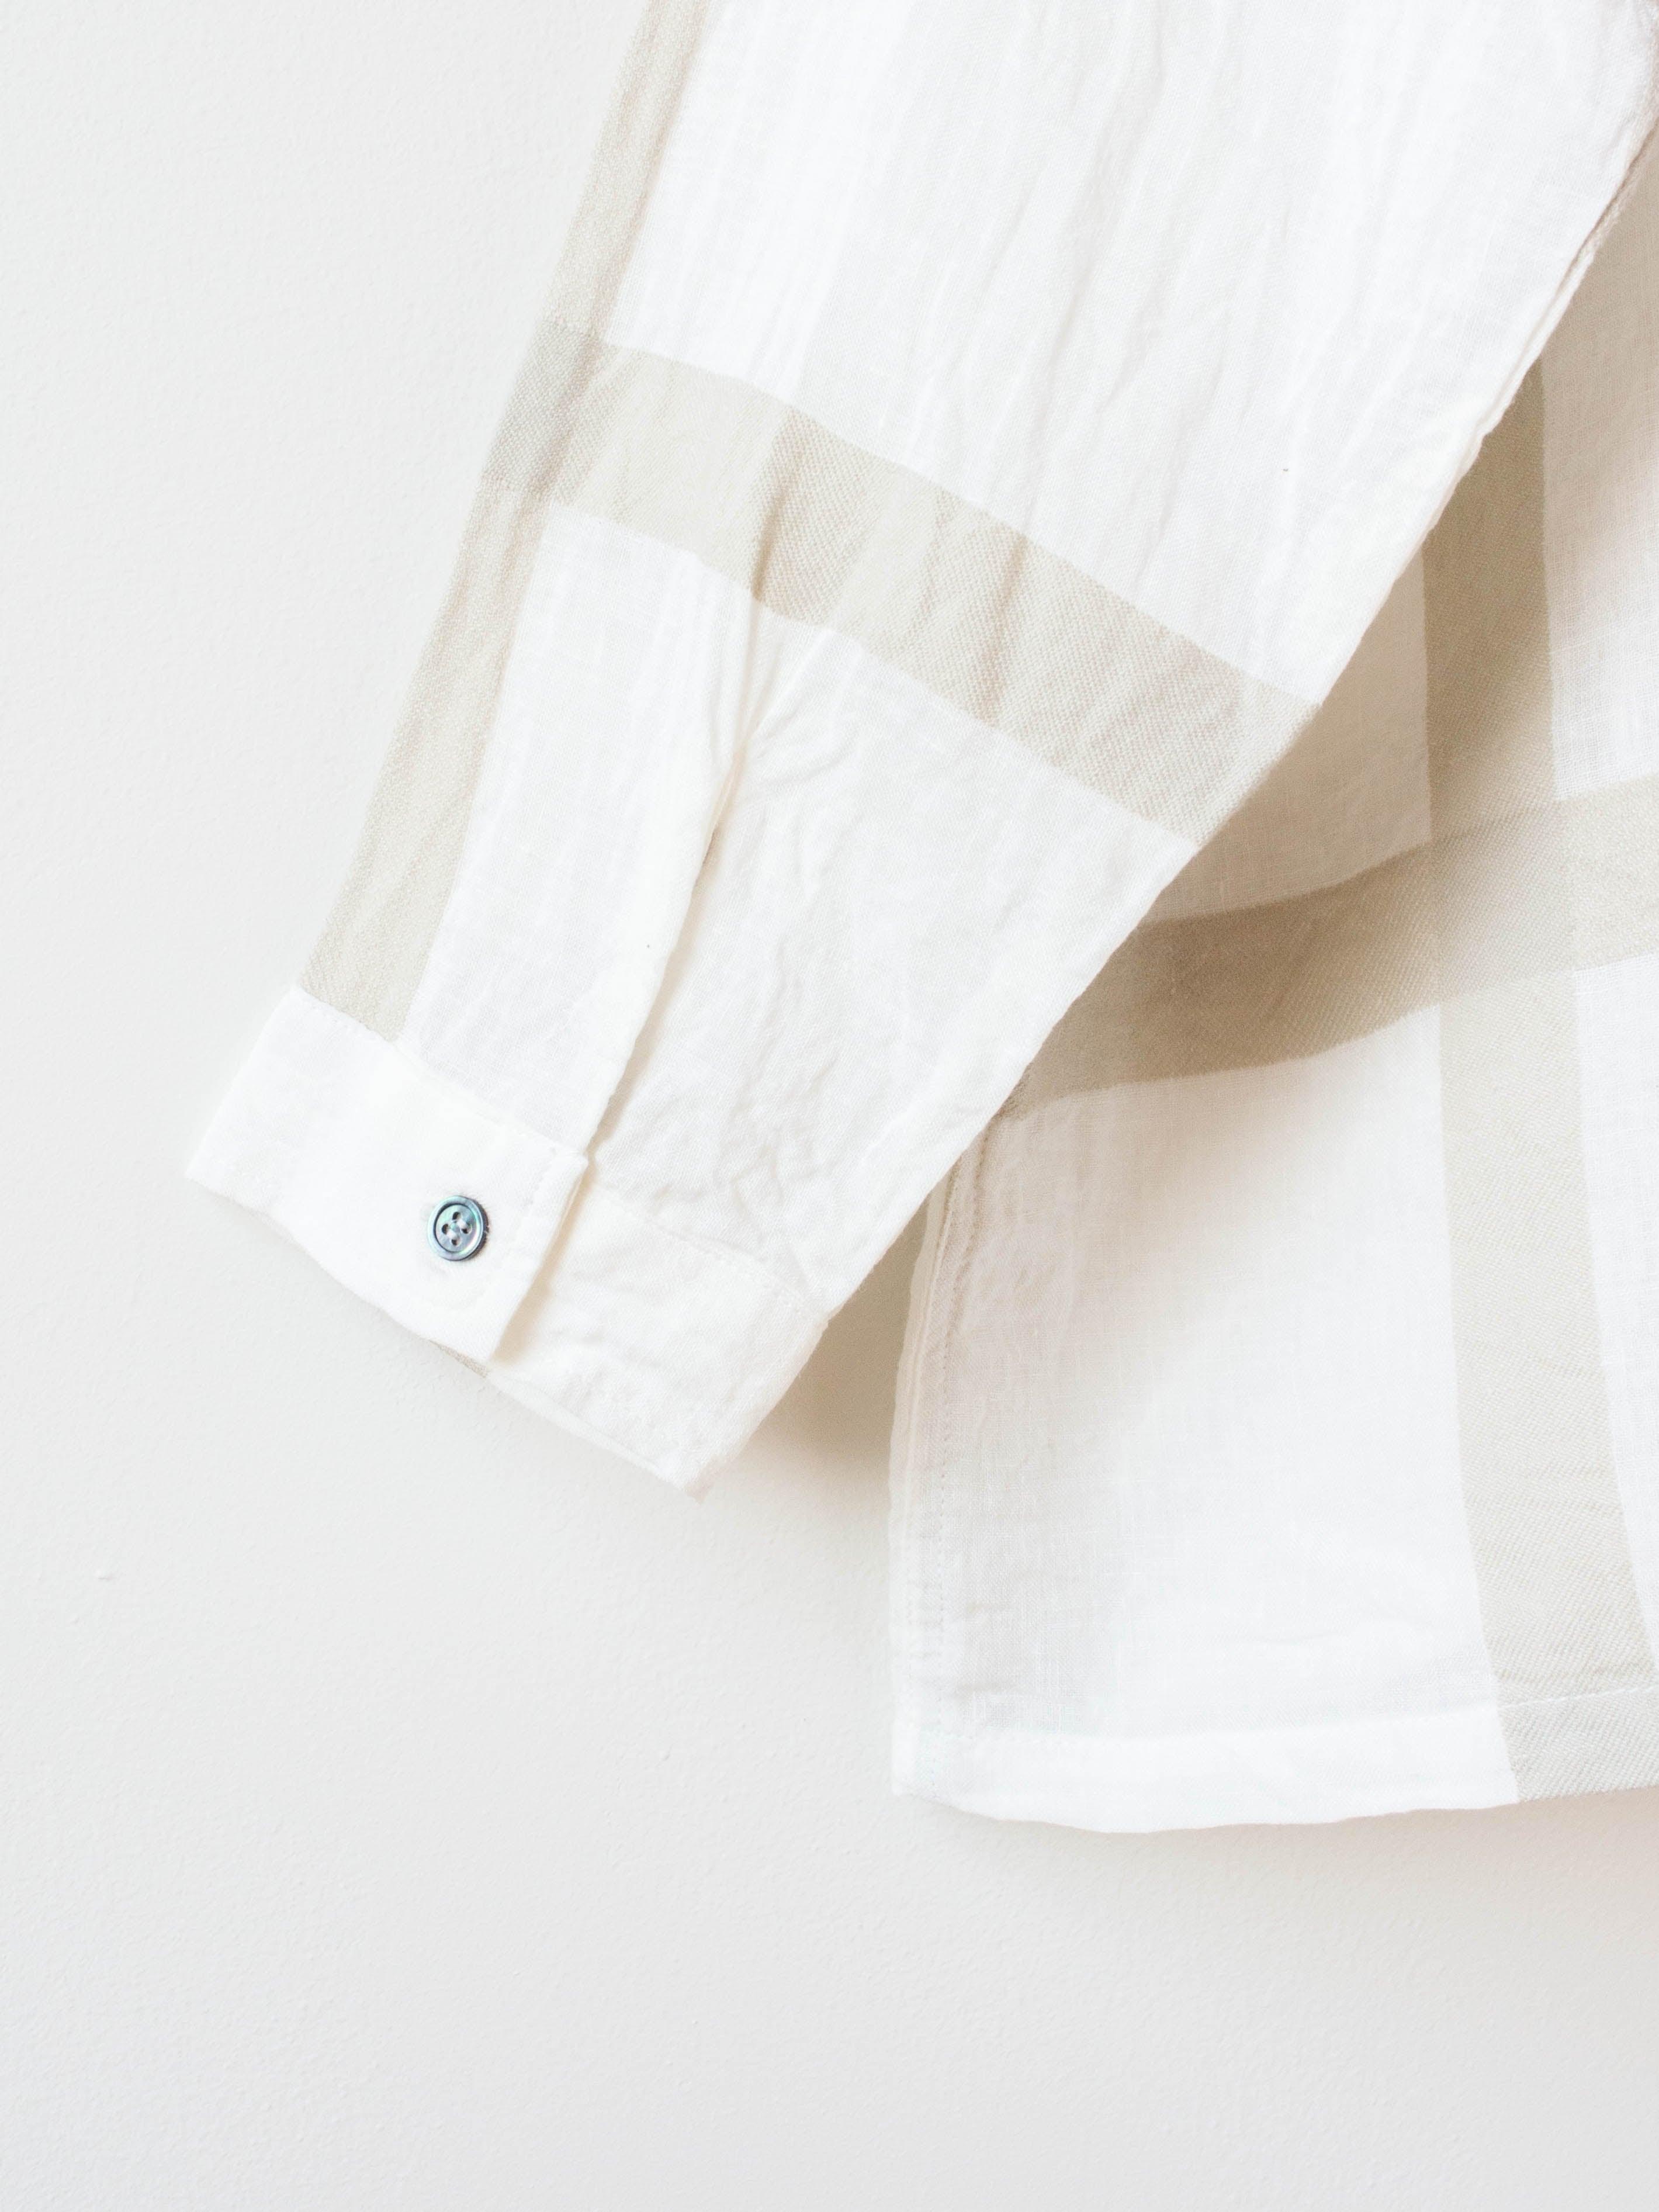 Namu Shop - Ichi Antiquites Lattice Check Shirt - White x Beige